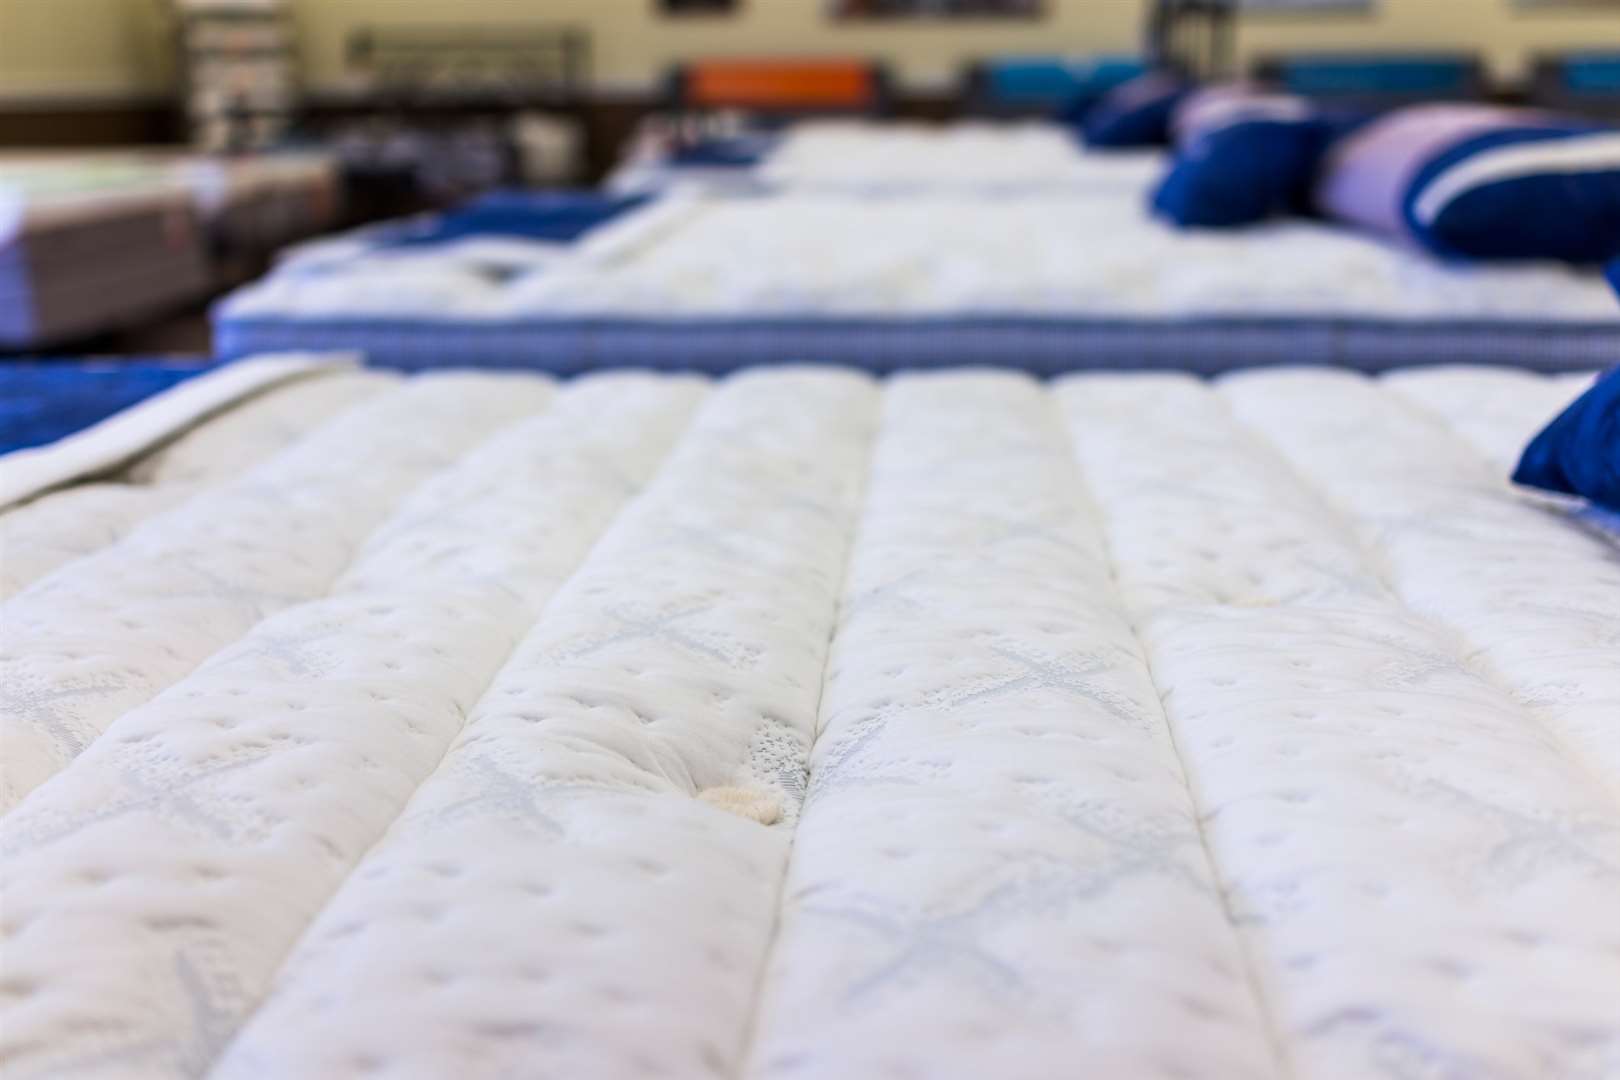 Strood-based Sleepeezee makes mattresses